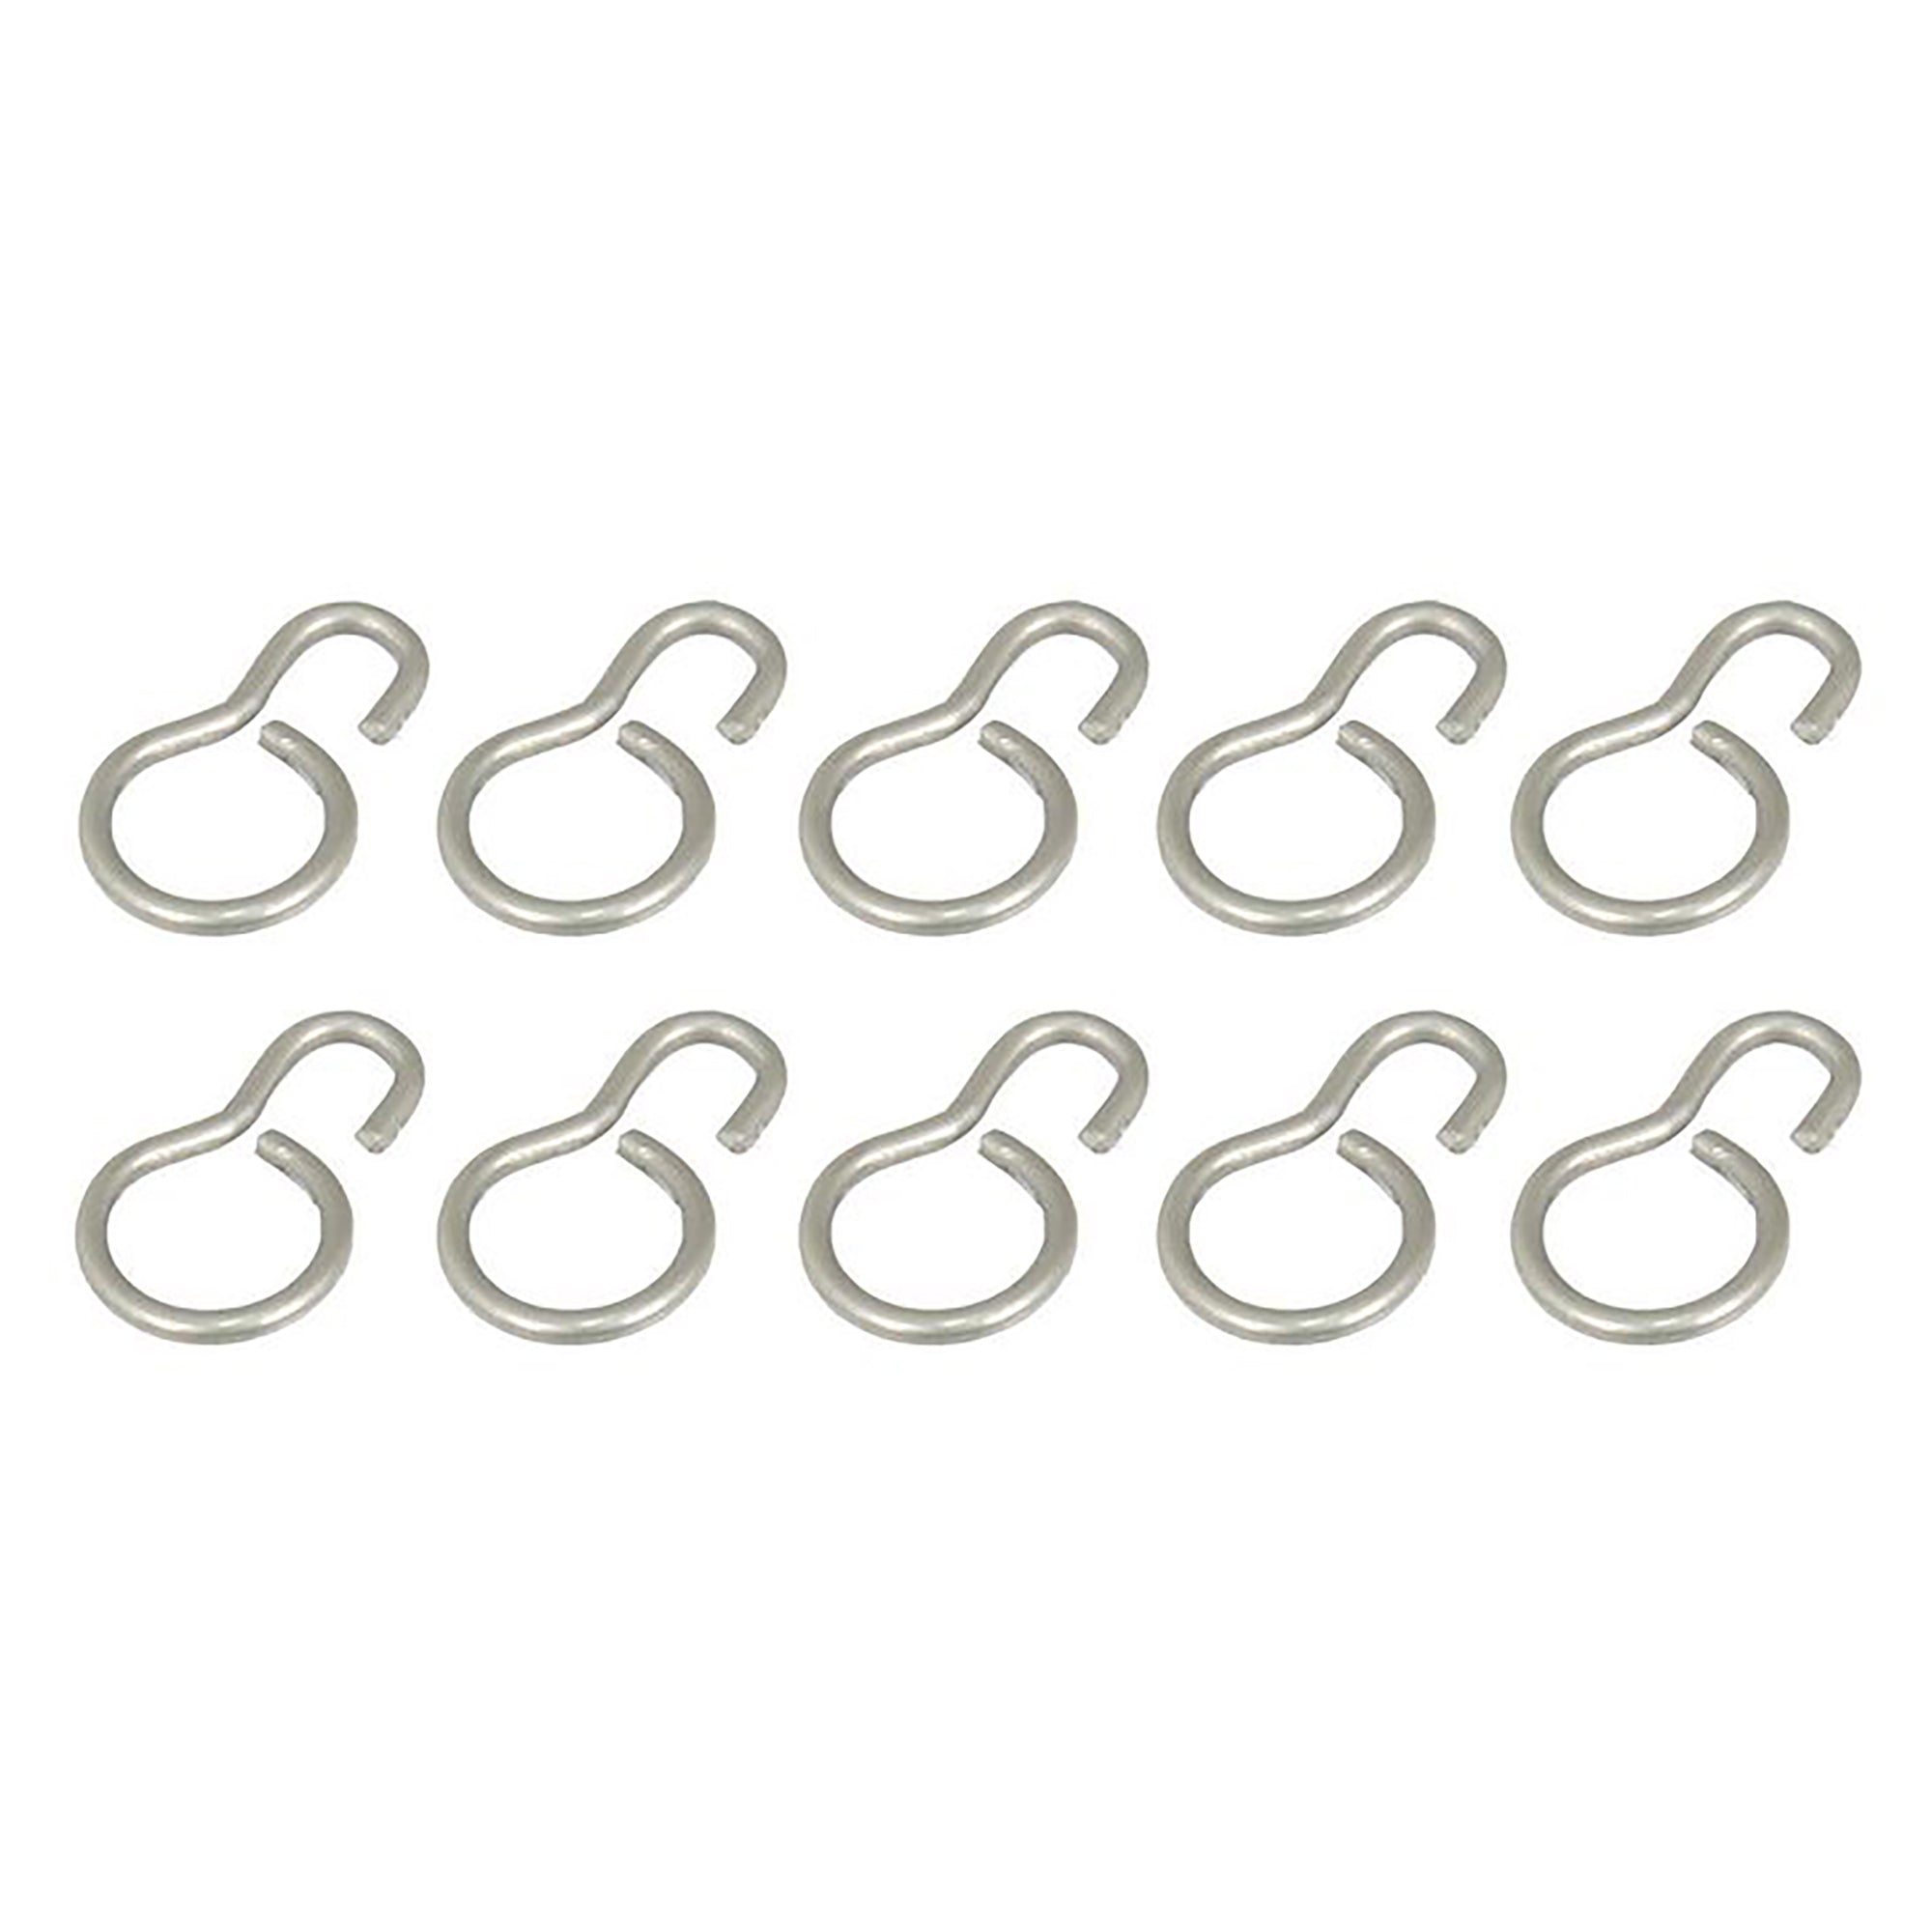 Joysway 881203 DF95 Metal Sail Clew Ring (Pack of 10)